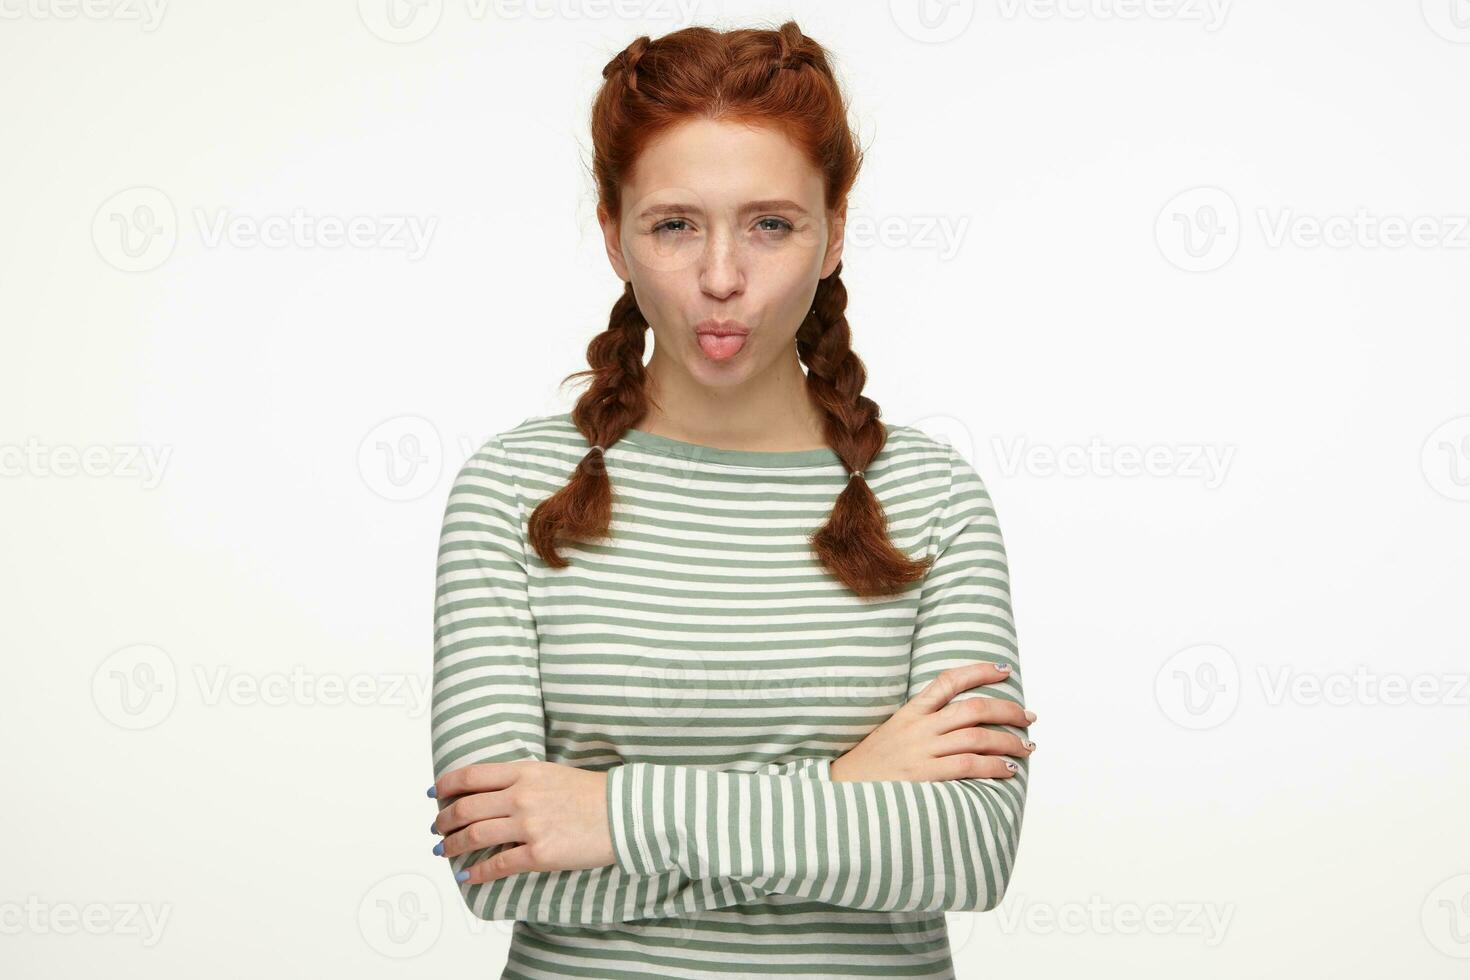 binnen- portret van jong gember vrouw staand over- wit achtergrond tonen haar tong met boos gelaats uitdrukking foto